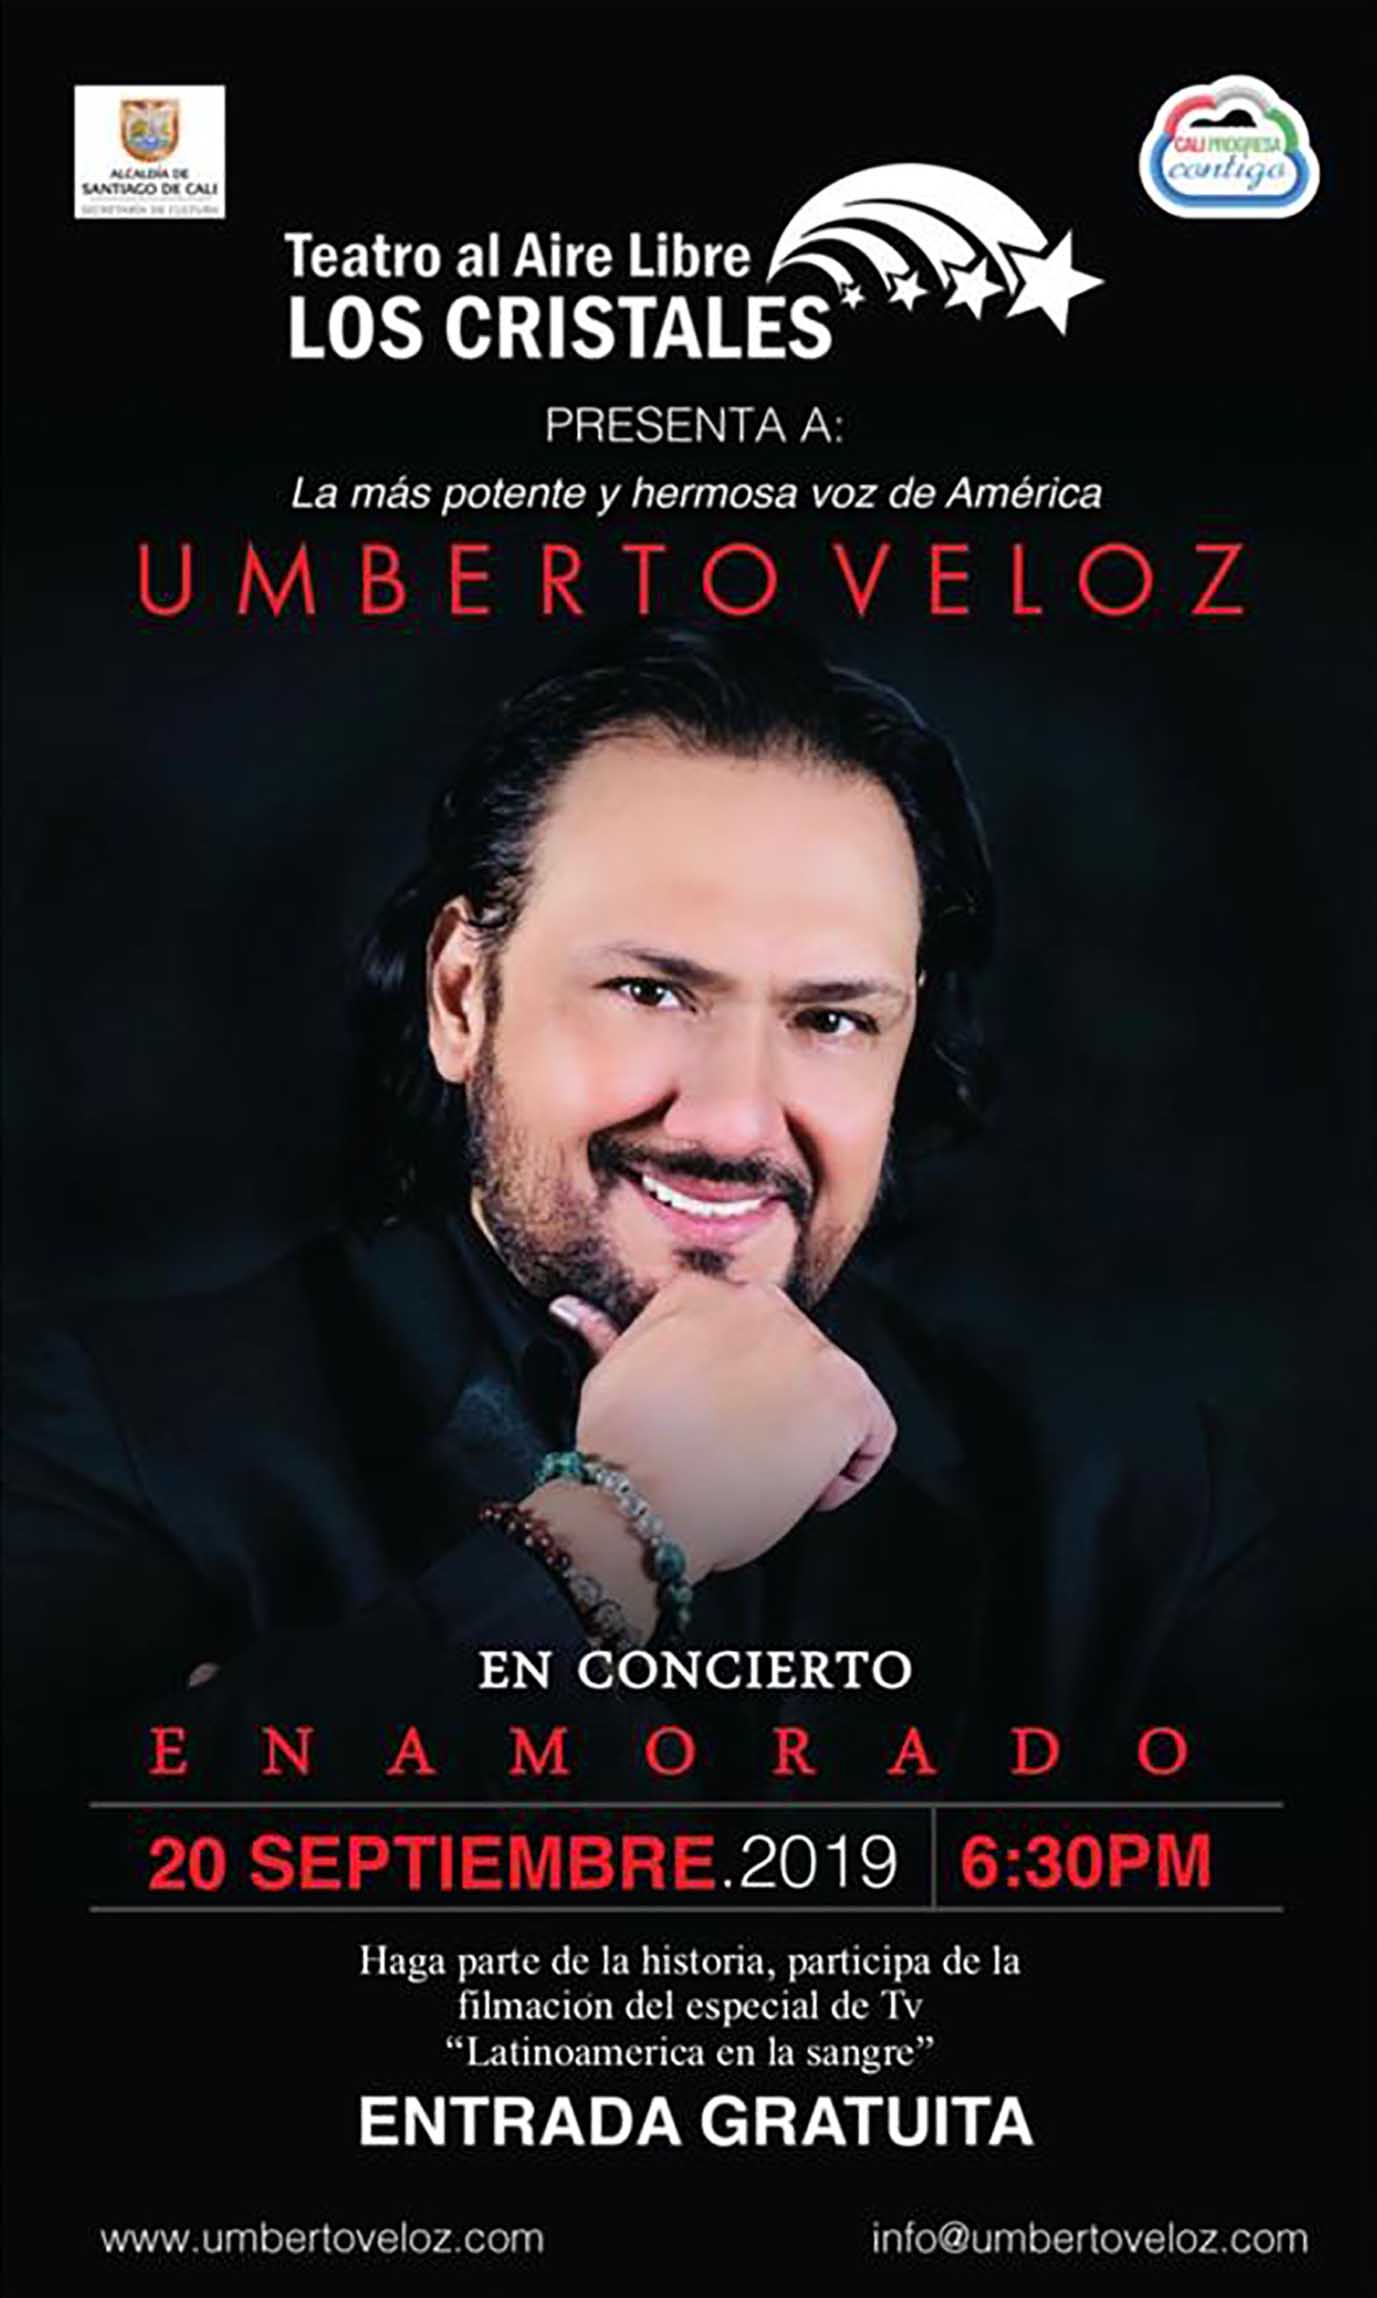  Amor y Amistad en el Teatro al Aire Libre Los Cristales con Umberto Veloz y su concierto ‘Enamorado’.